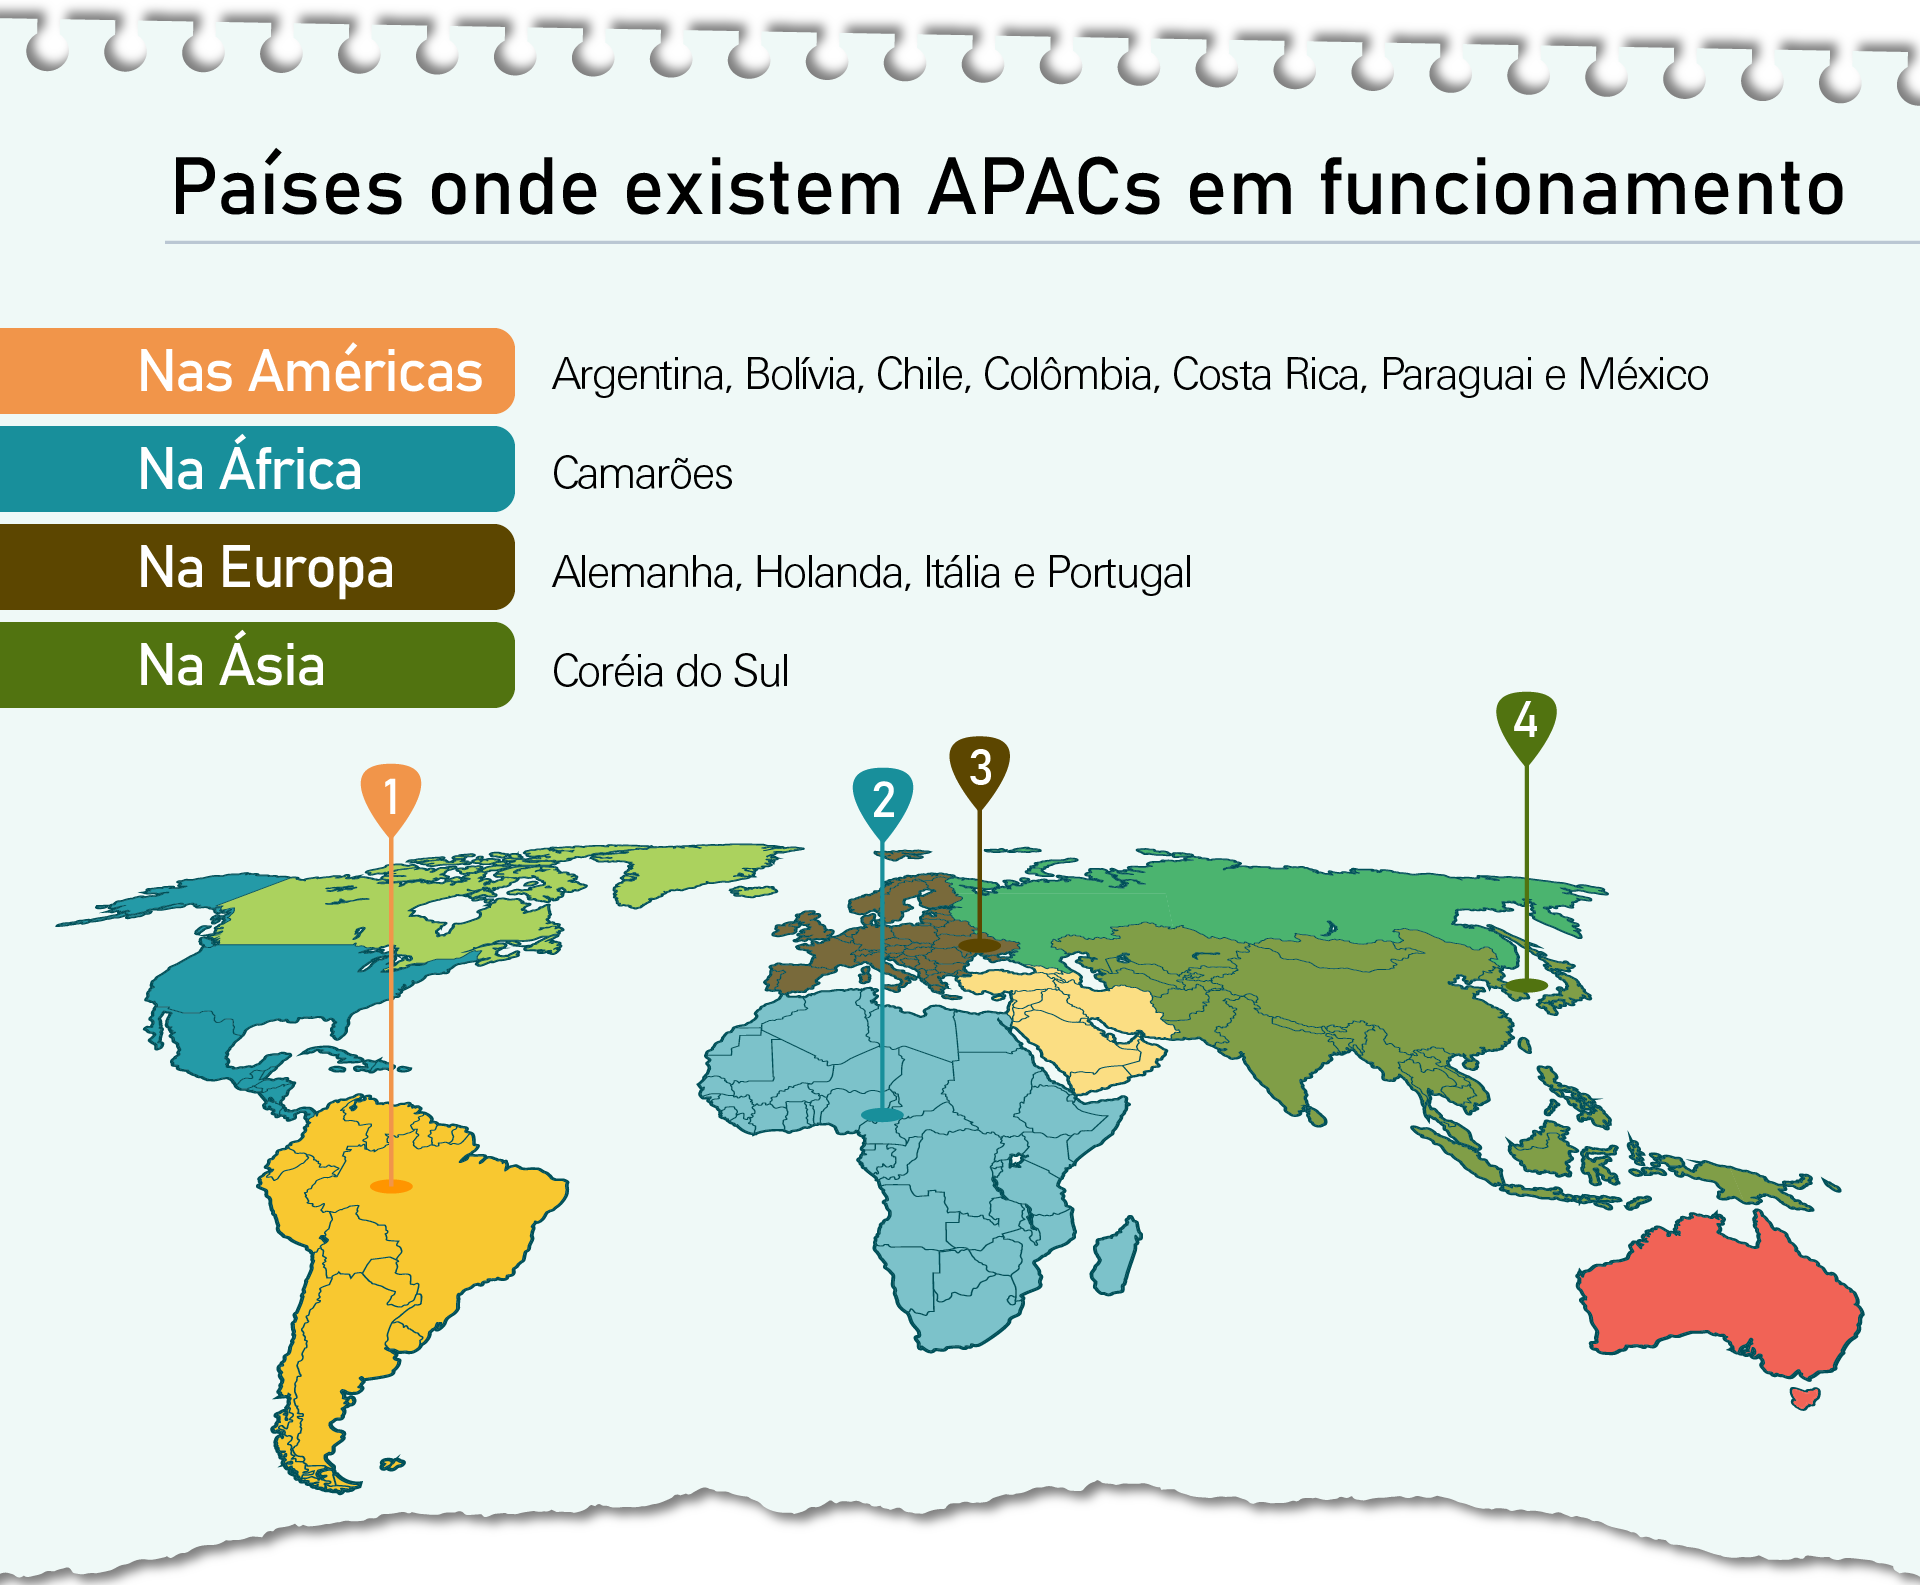 Países onde existem Apac em funcionamento. Nas Américas: Argentina, Bolívia, Chile, Colômbia, Costa Rica, Paraguai e México. Na Europa: Alemanha, Holanda, Itália e Portugal. Na Ásia: Coréia do Sul. Na África: Camarões.